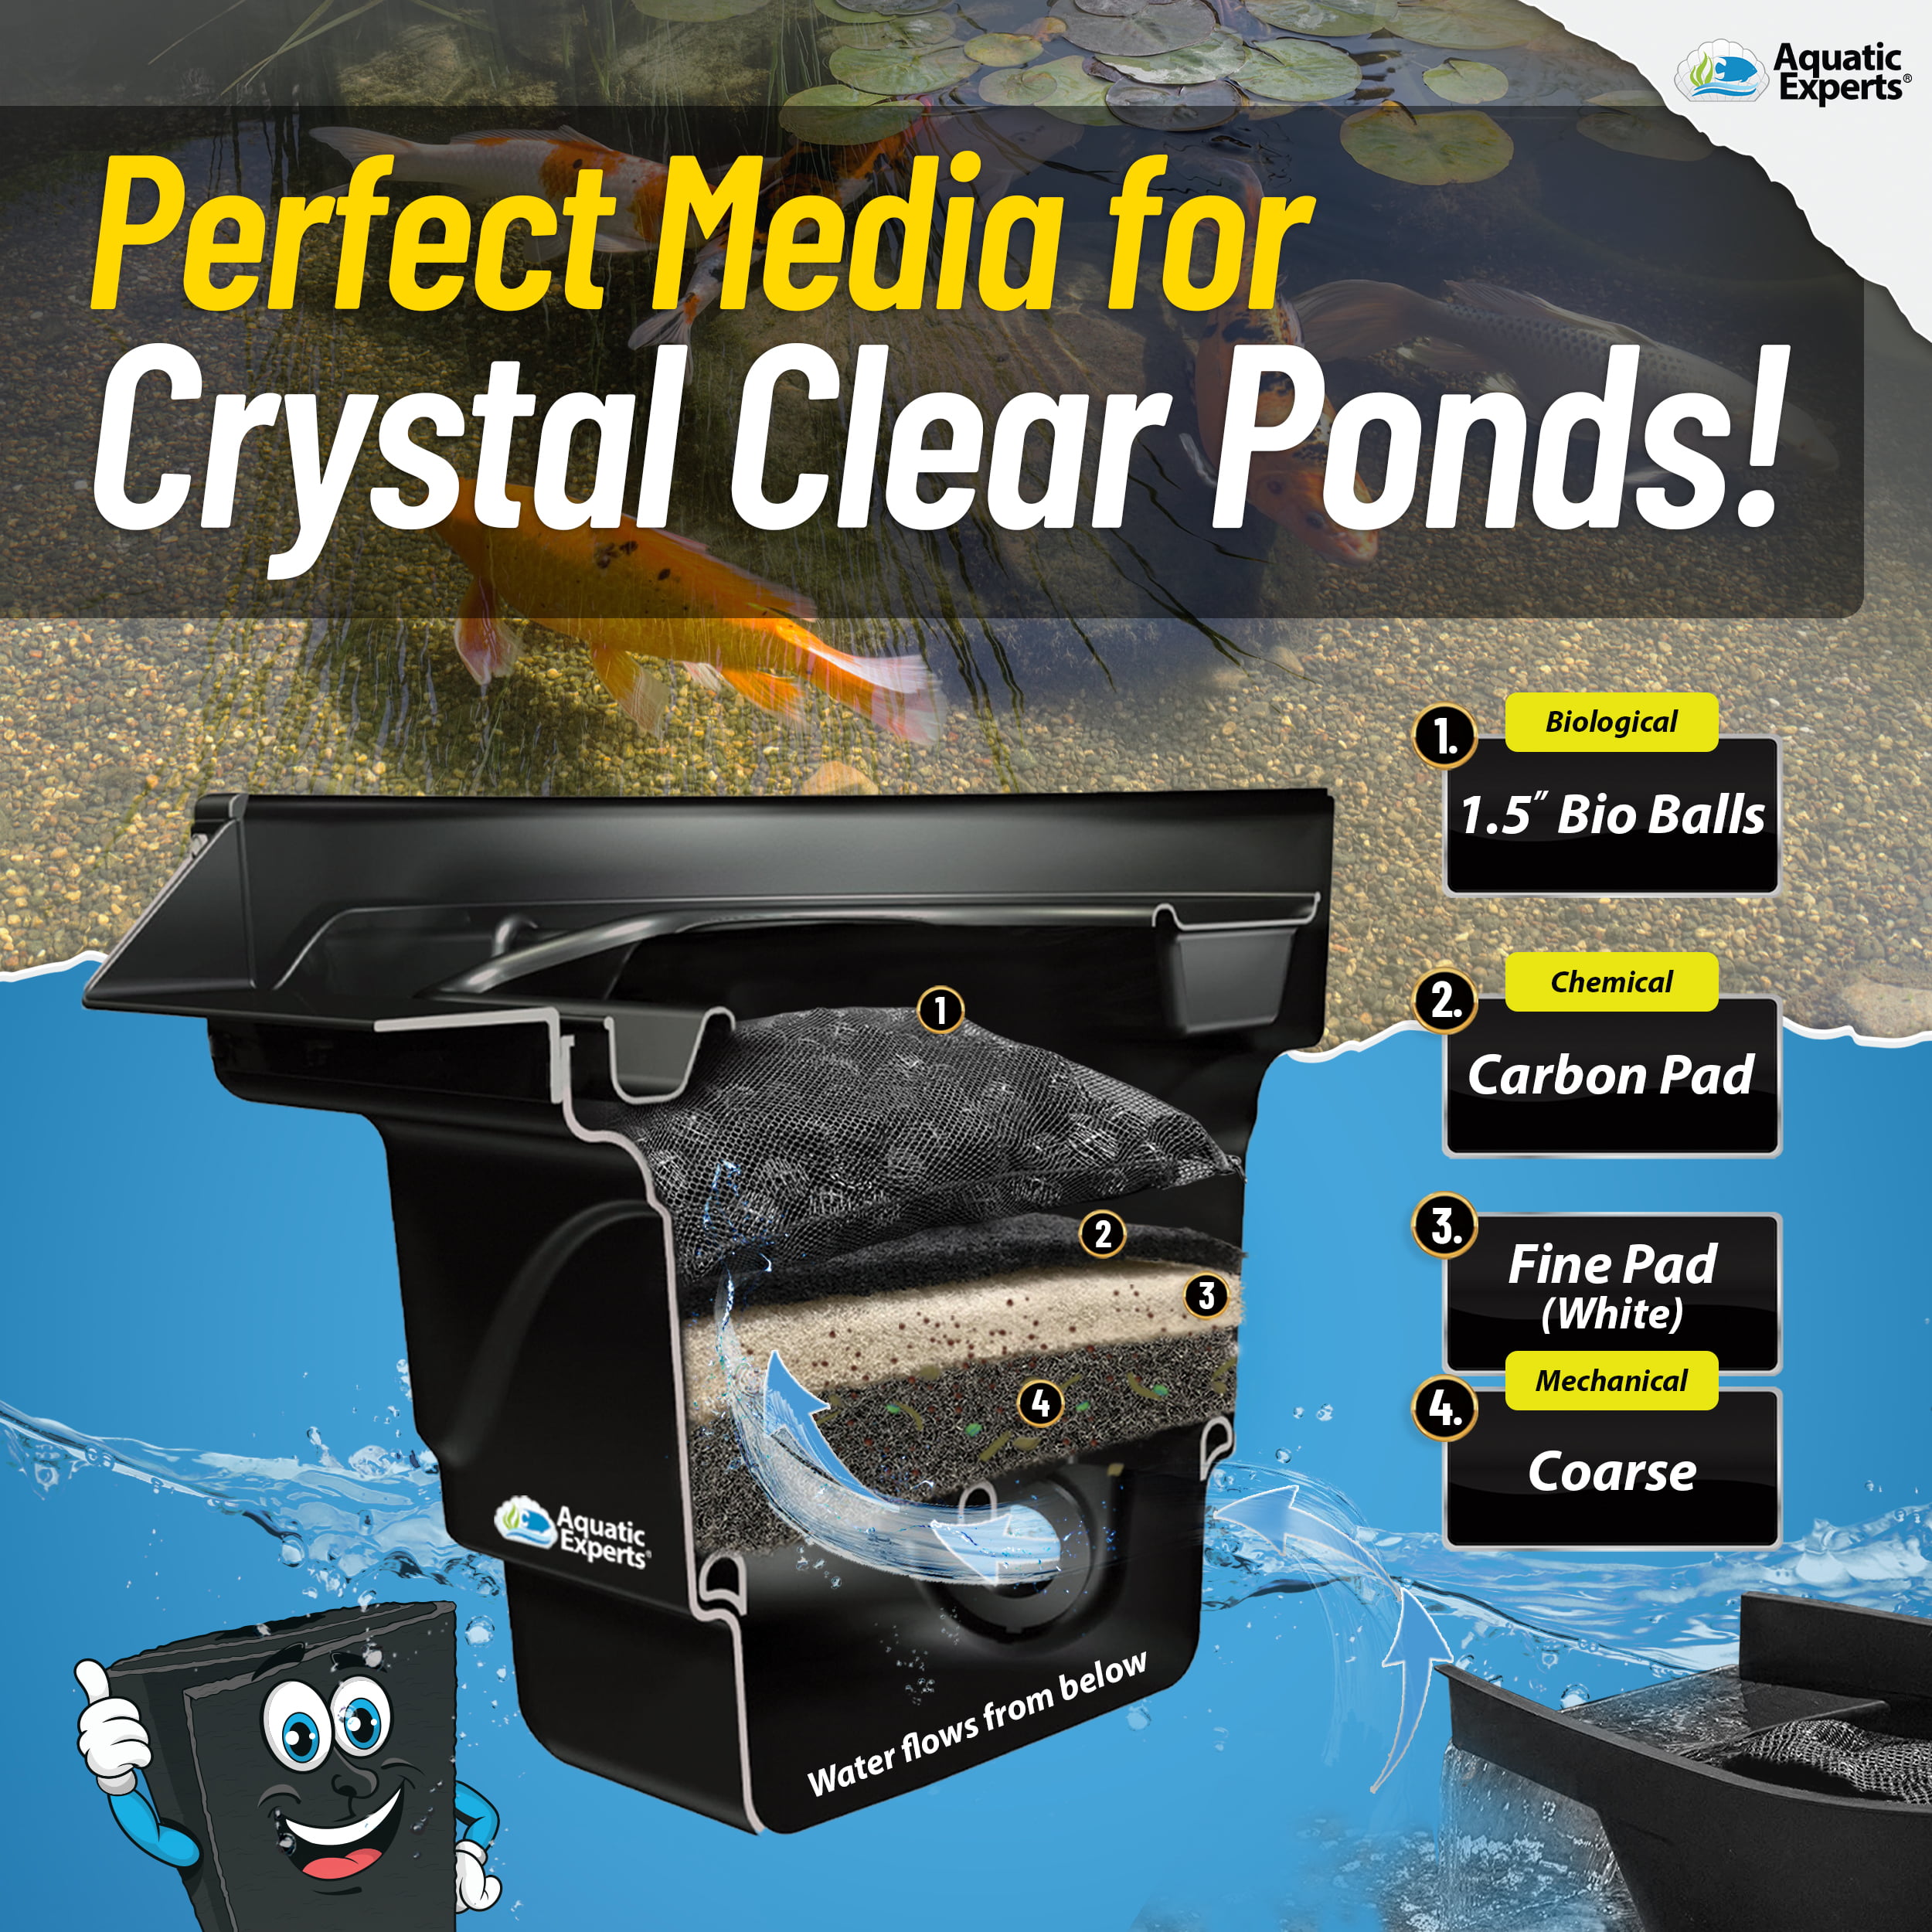 Aquarium Filter Pad – Aquarium Filter Media Roll for Crystal Clear